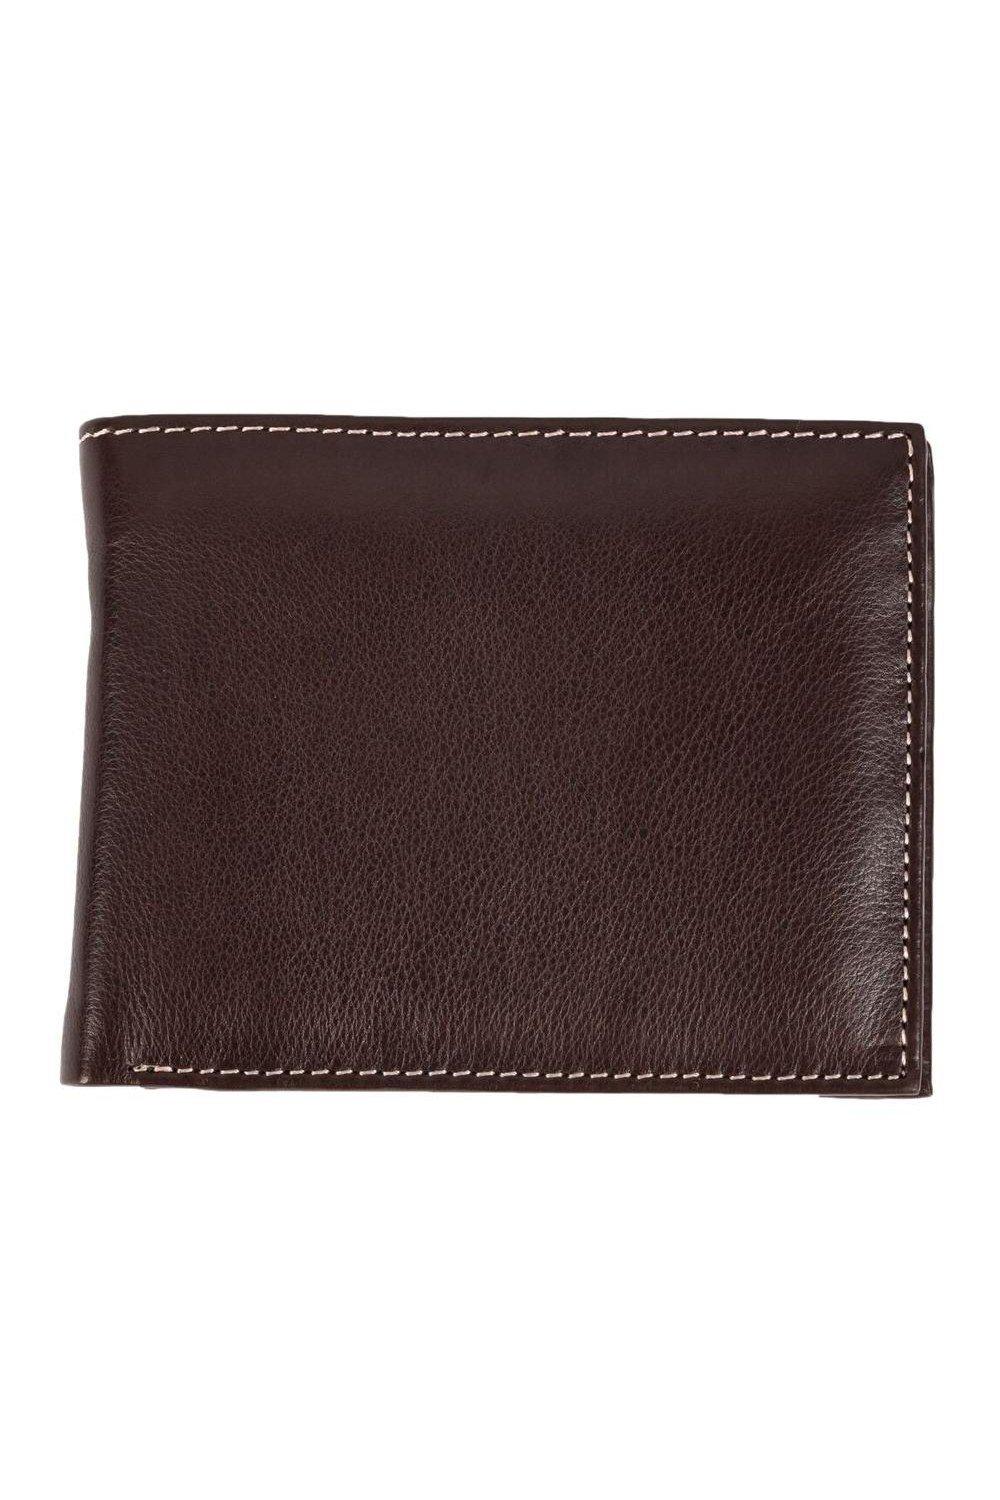 Кошелек Mark Trifold с карманом для монет Eastern Counties Leather, коричневый кошелек для монет бетси eastern counties leather красный